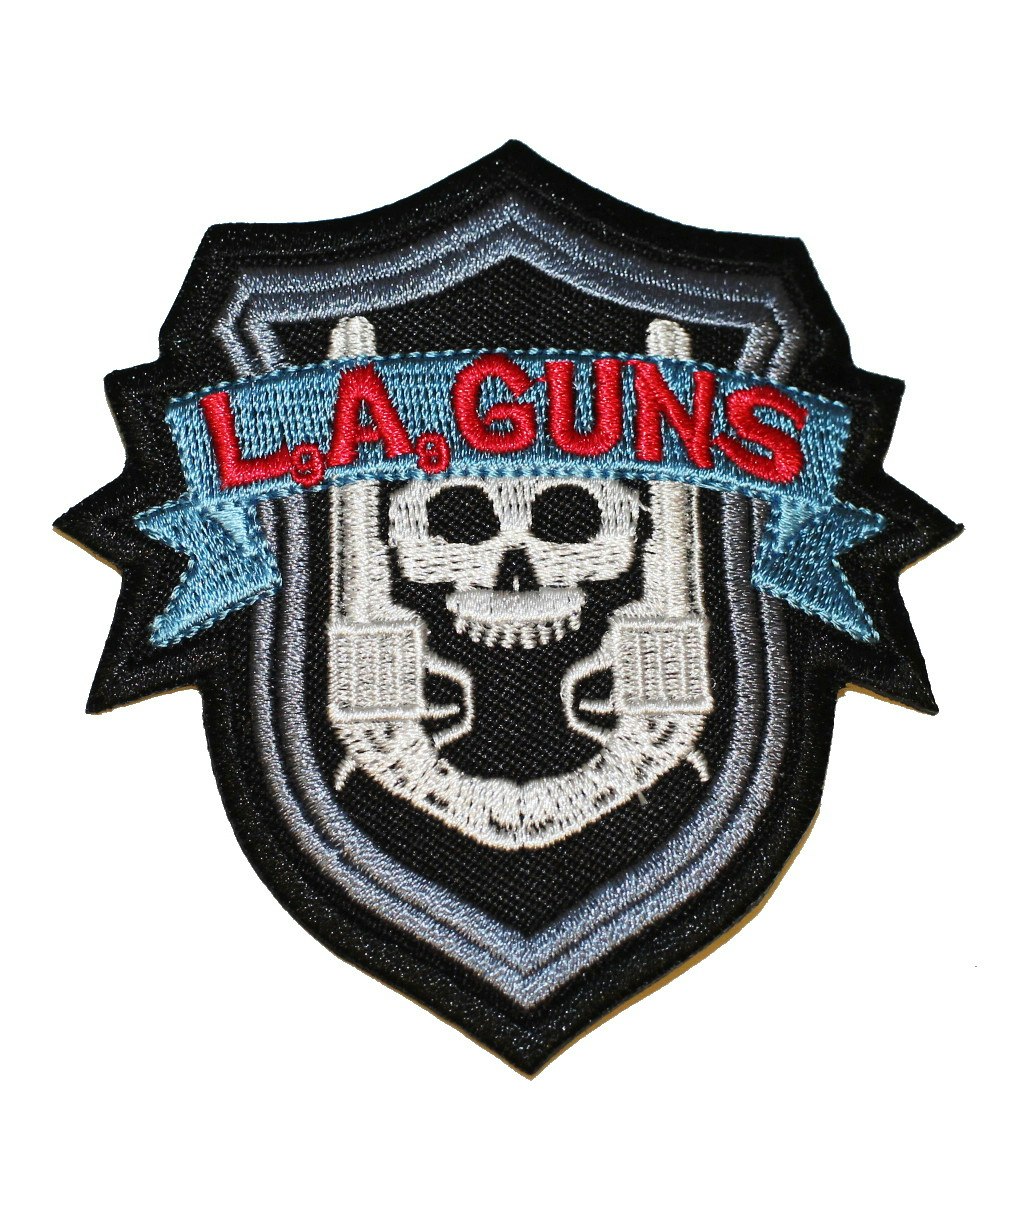 LA guns logo patch